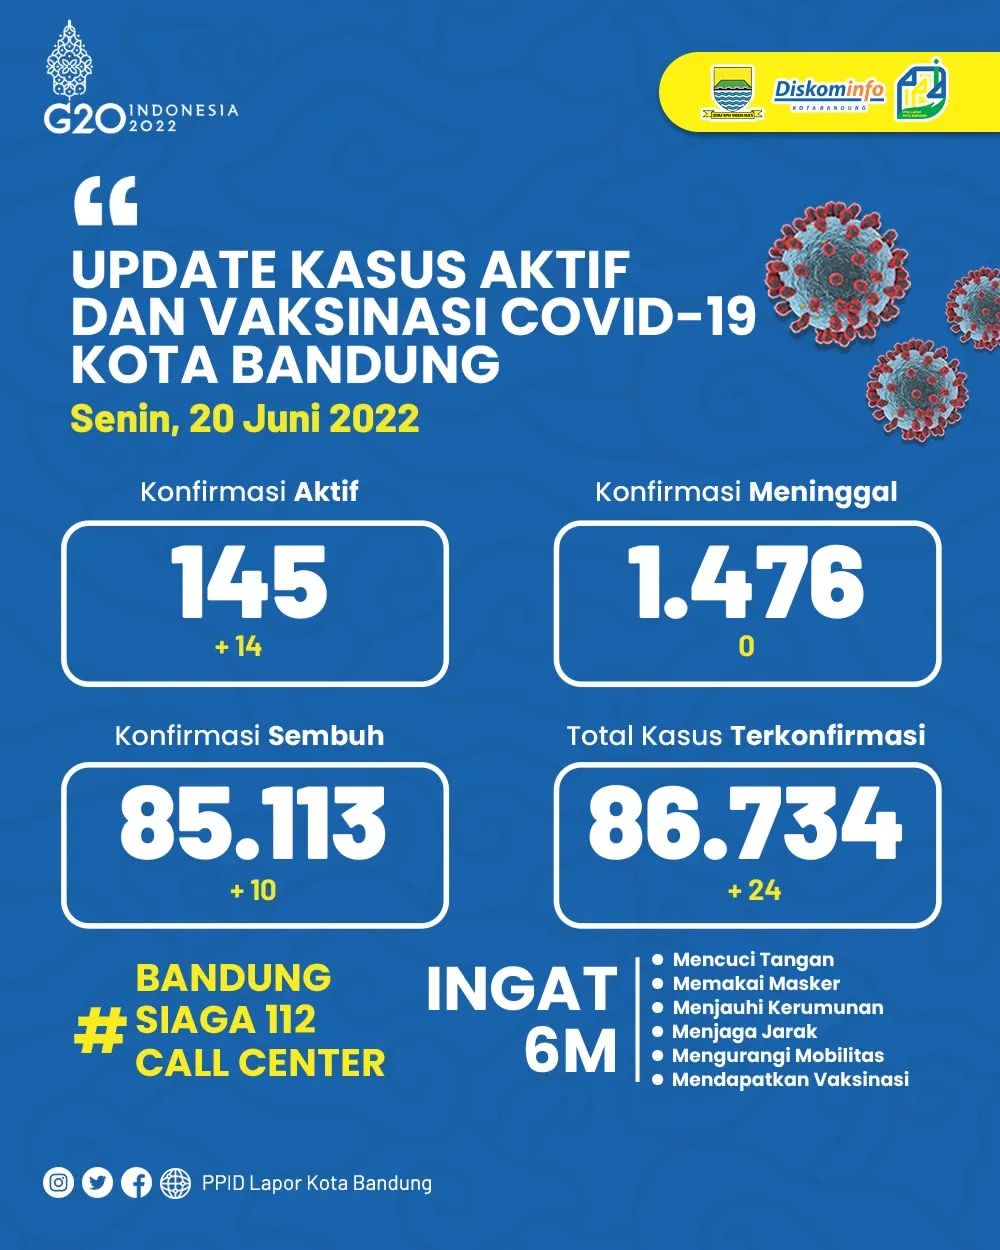 UPDATE STATISTIK COVID-19 DI KOTA BANDUNG PER TANGGAL 20 JUNI 2022